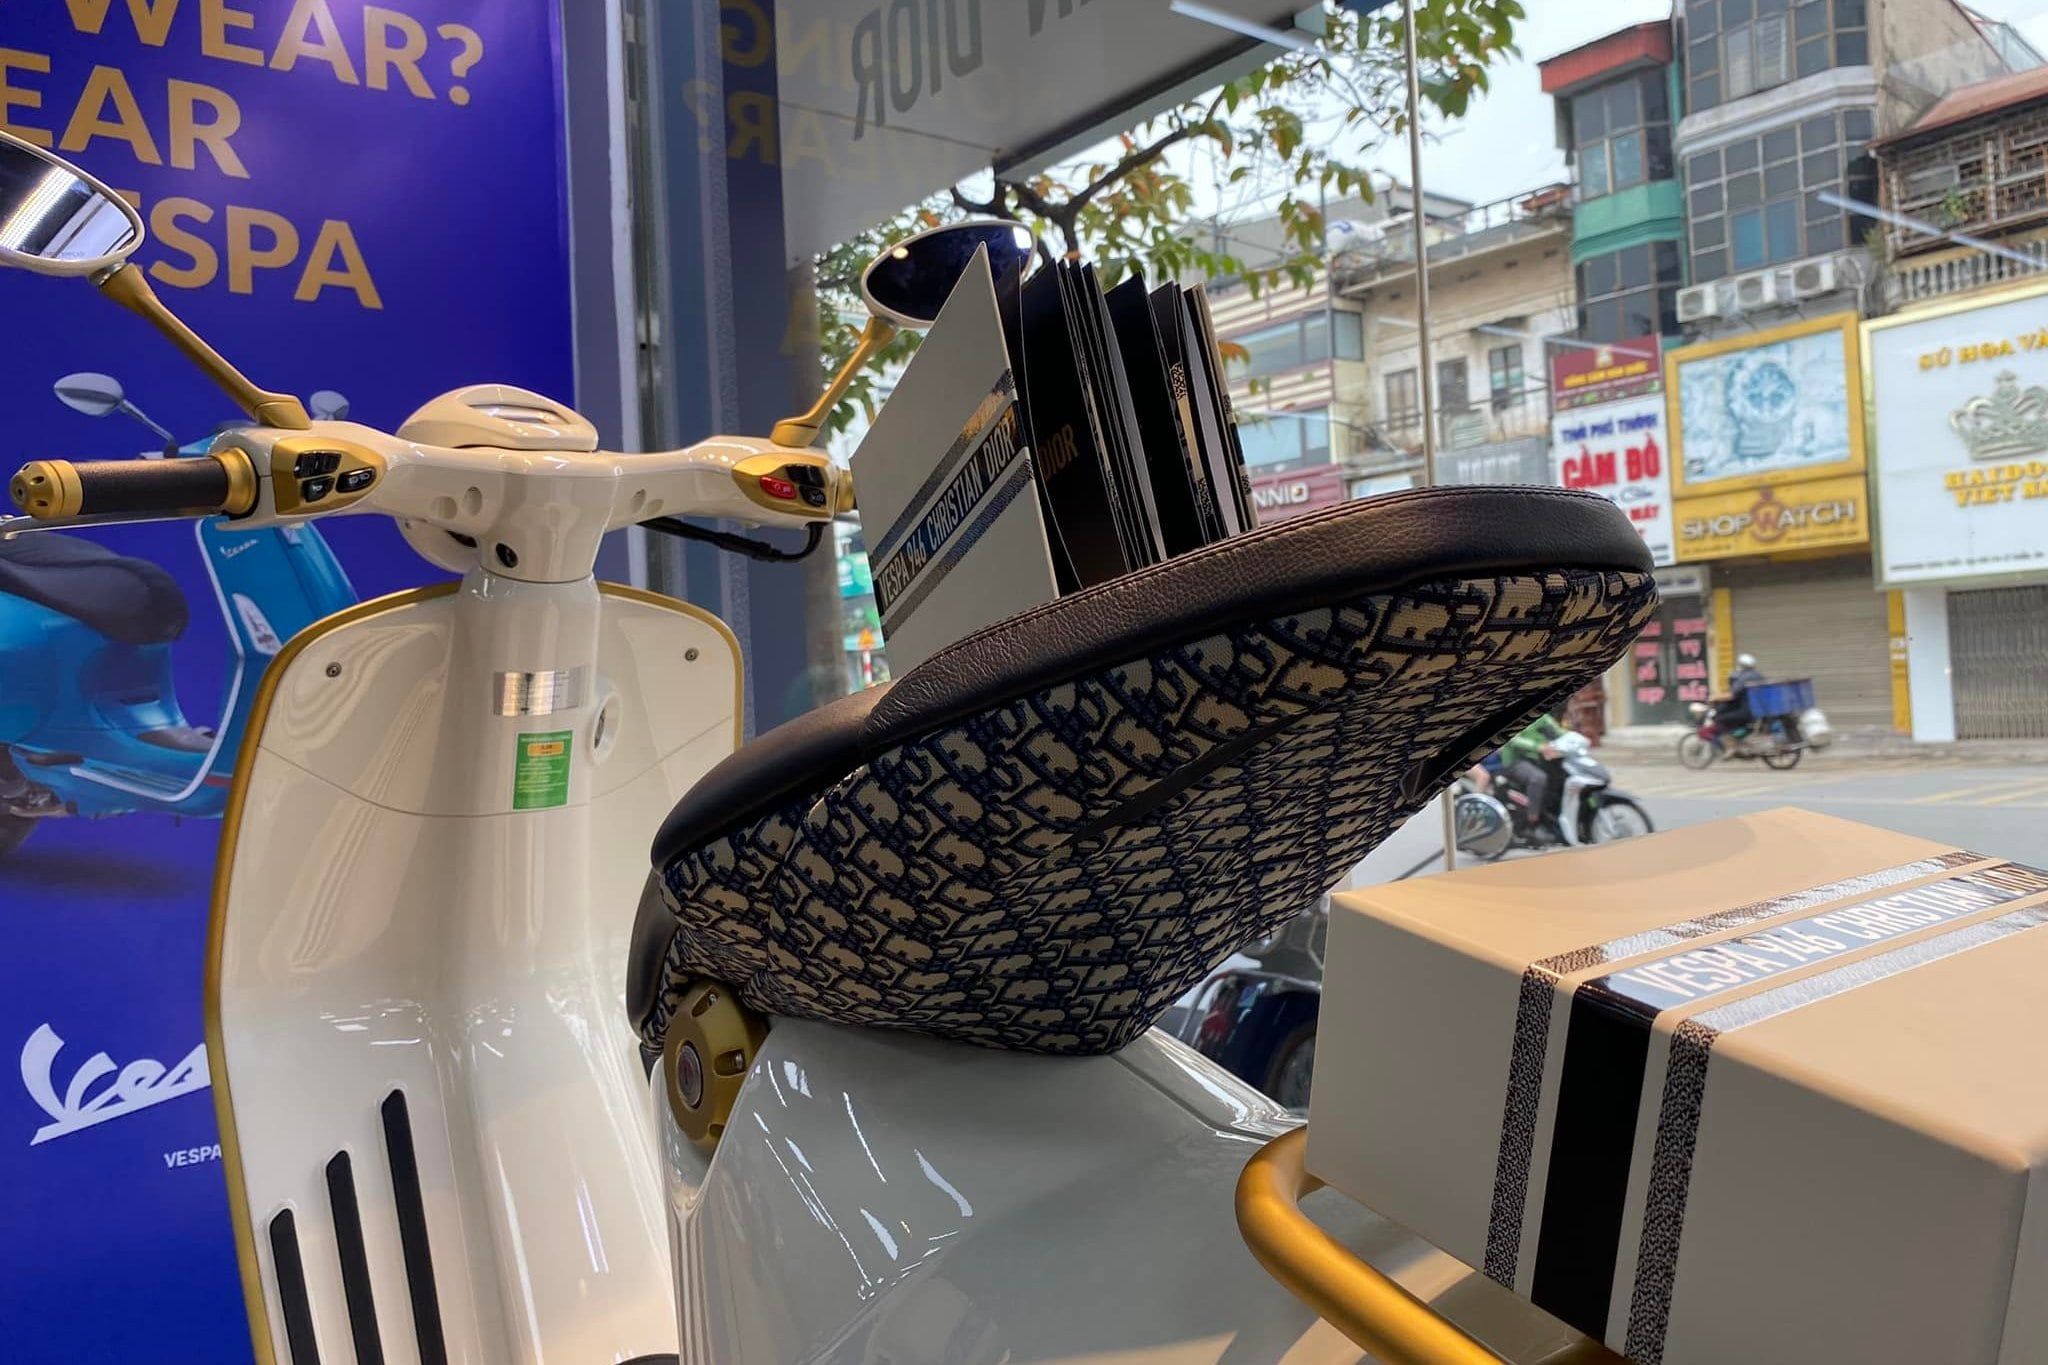 Dân buôn hét giá xe máy Vespa 946 Christian Dior gần 1 tỉ đồng tại Việt Nam   Tuổi Trẻ Online